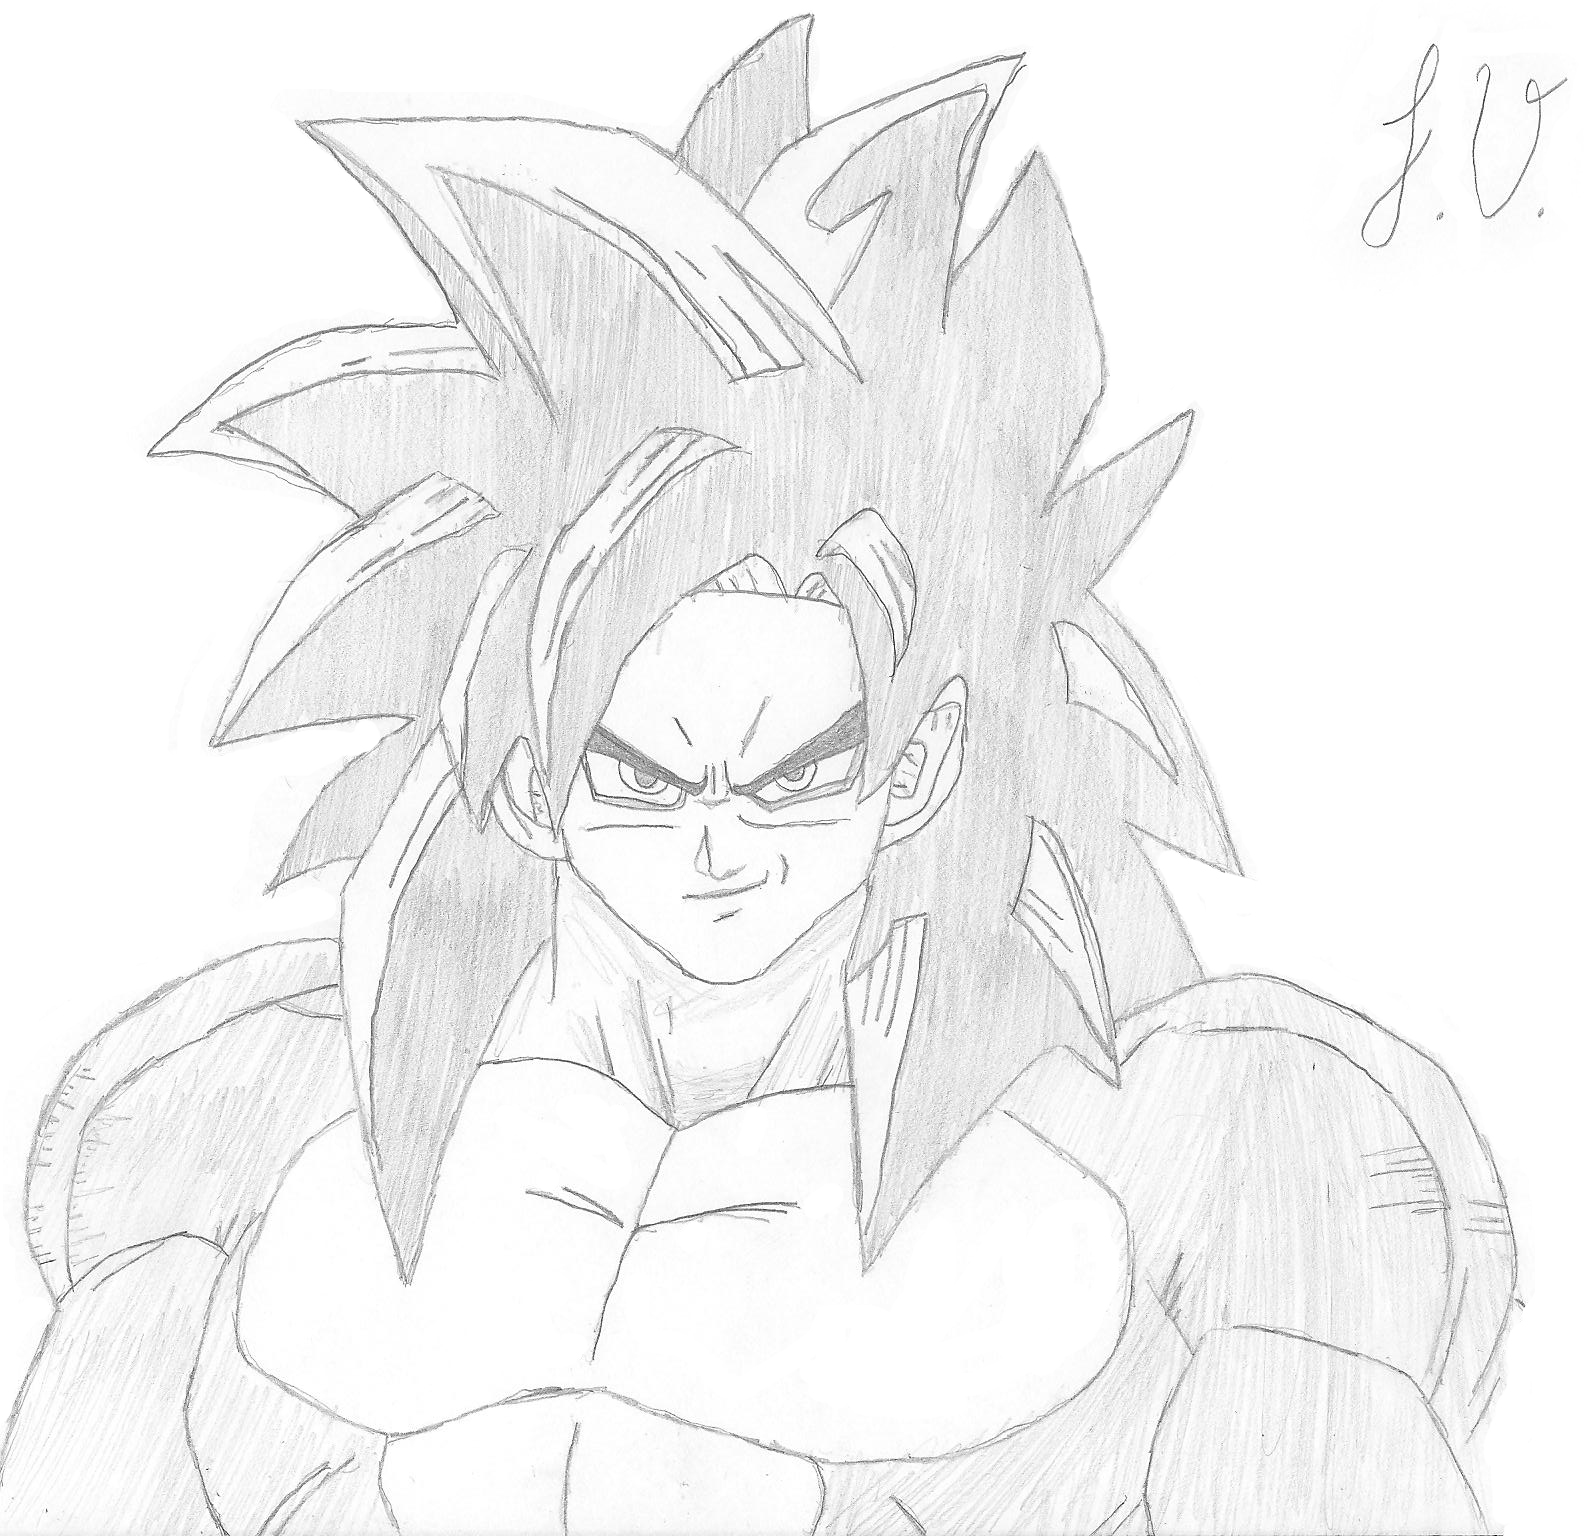 Goku ssj4  Inspiração de desenho, Goku desenho, Desenho